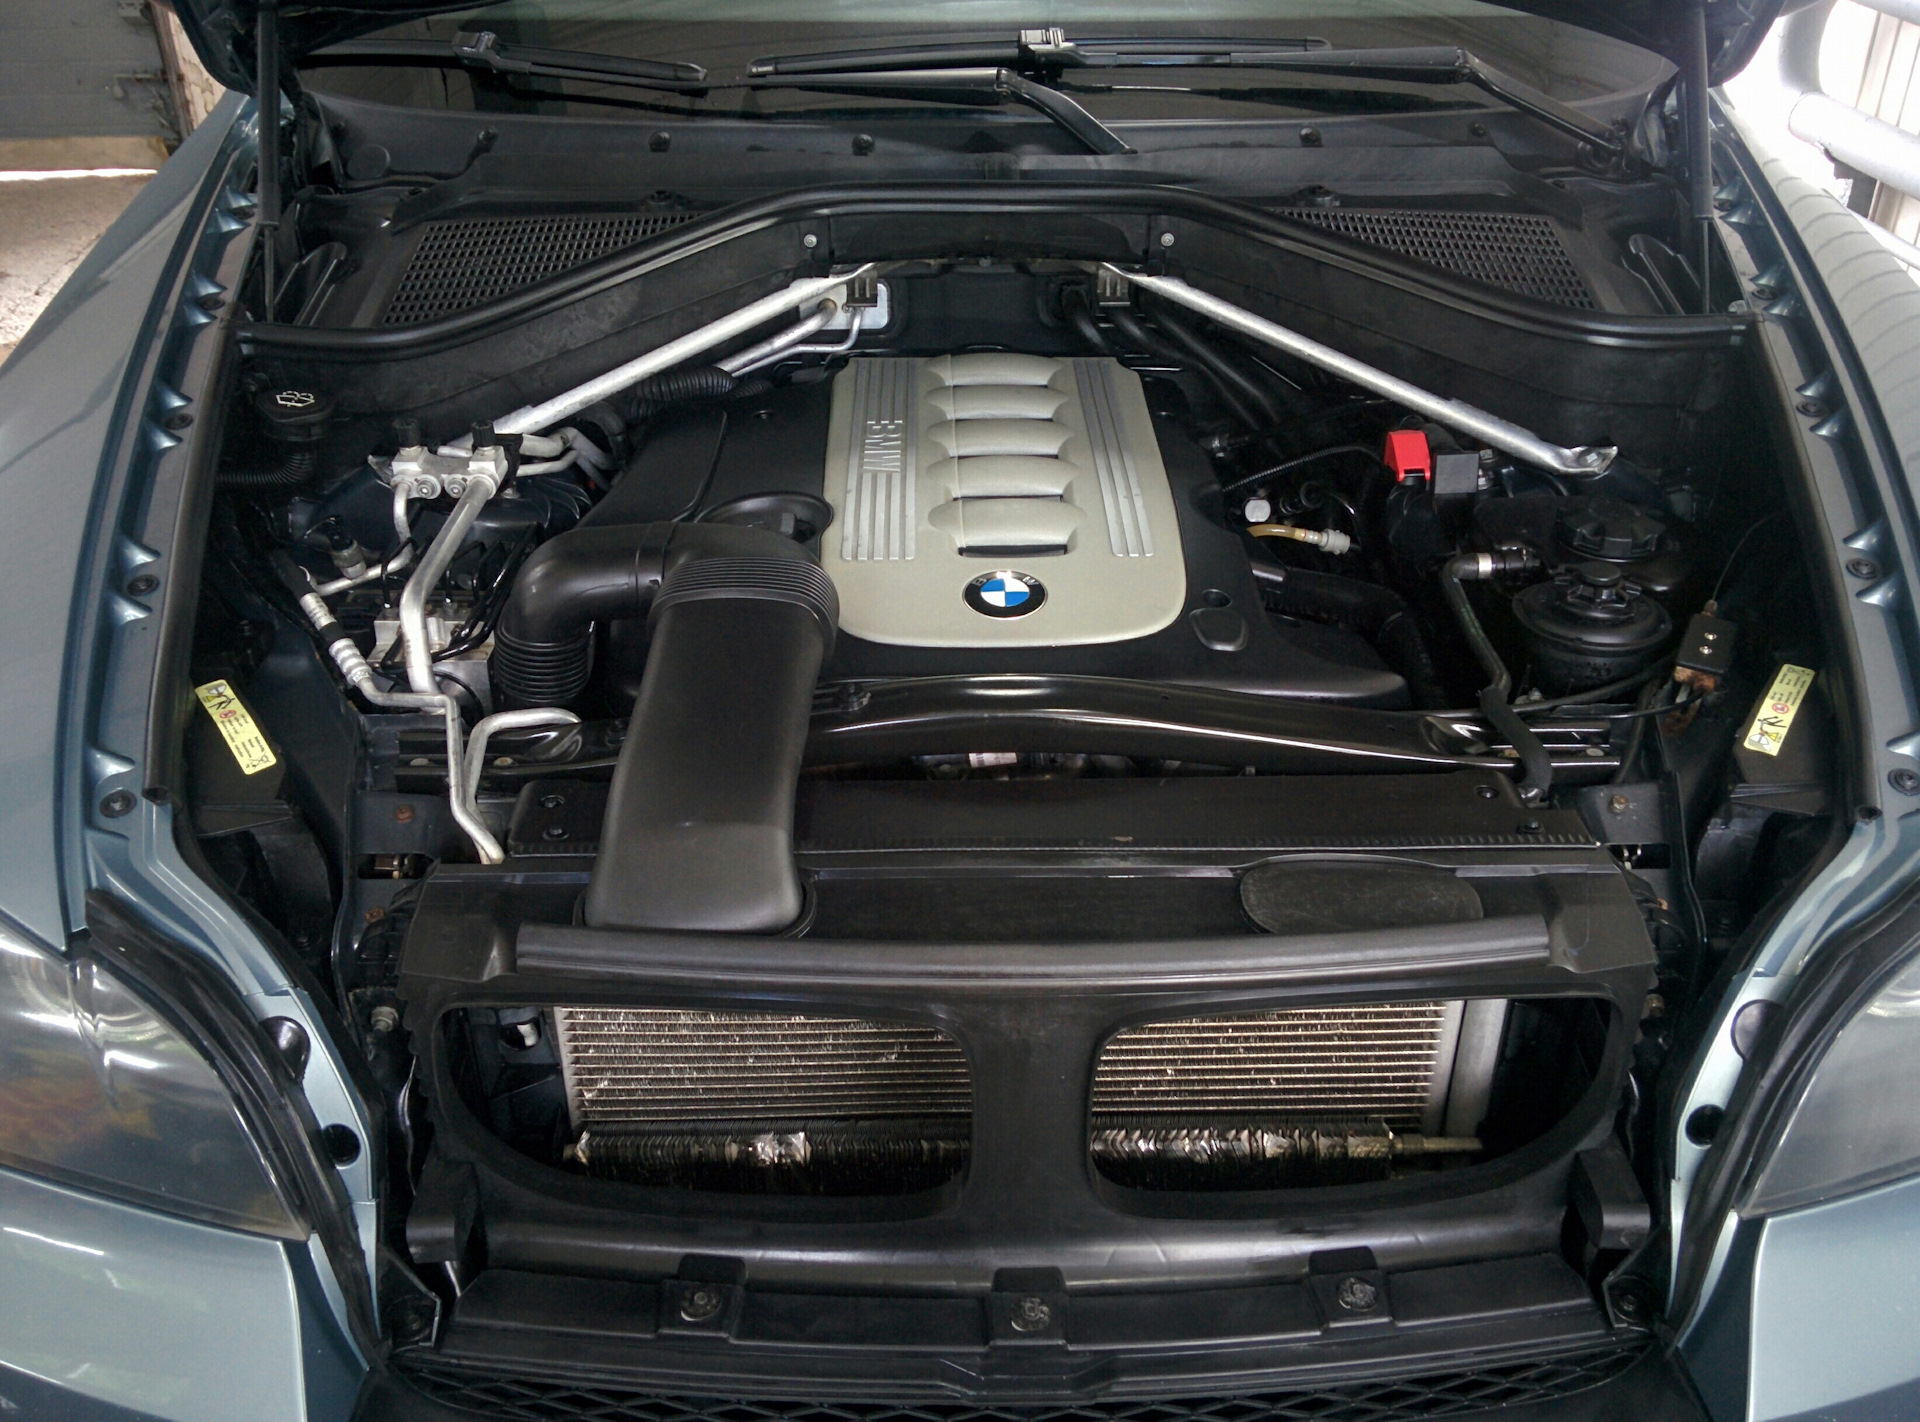 Bmw x5 капот. БМВ х5 под капотом. BMW e70 m57 двигатель. BMW x5 e70 моторный отсек. БМВ х5 е70 3.0 дизель.